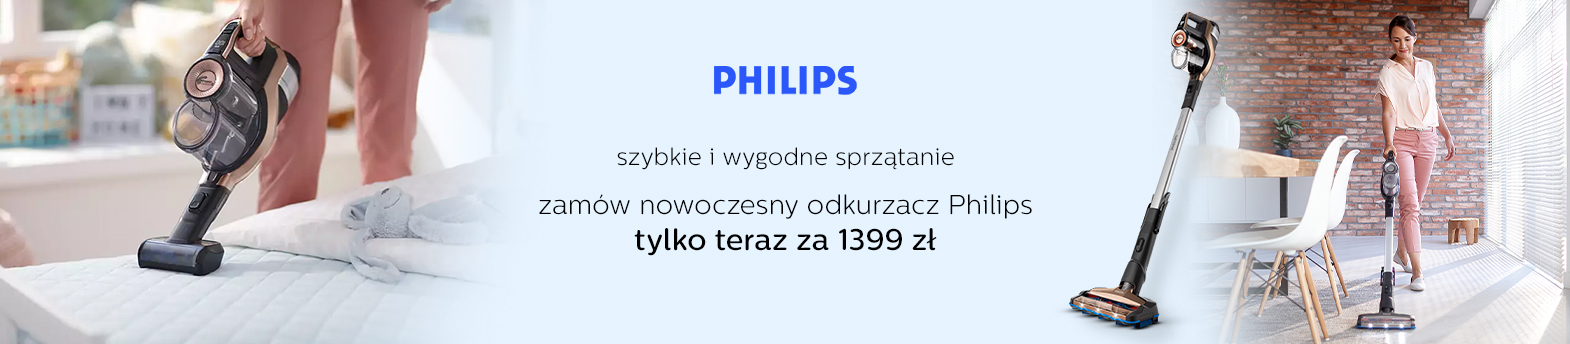 Philips - odkurzacz 2 w 1